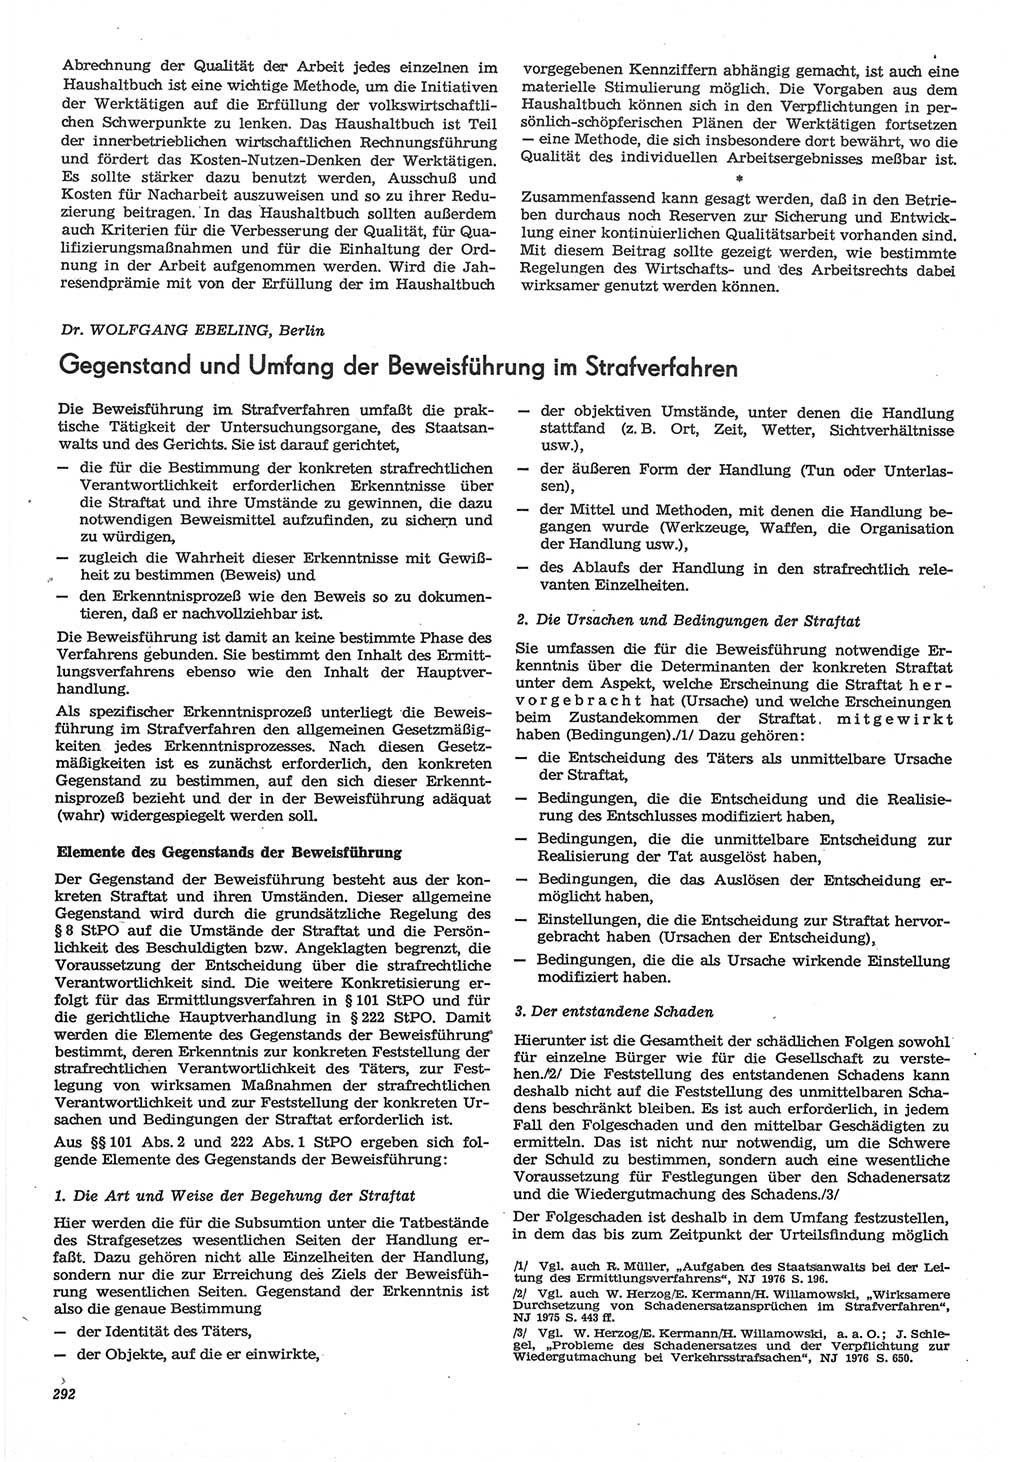 Neue Justiz (NJ), Zeitschrift für Recht und Rechtswissenschaft-Zeitschrift, sozialistisches Recht und Gesetzlichkeit, 31. Jahrgang 1977, Seite 292 (NJ DDR 1977, S. 292)